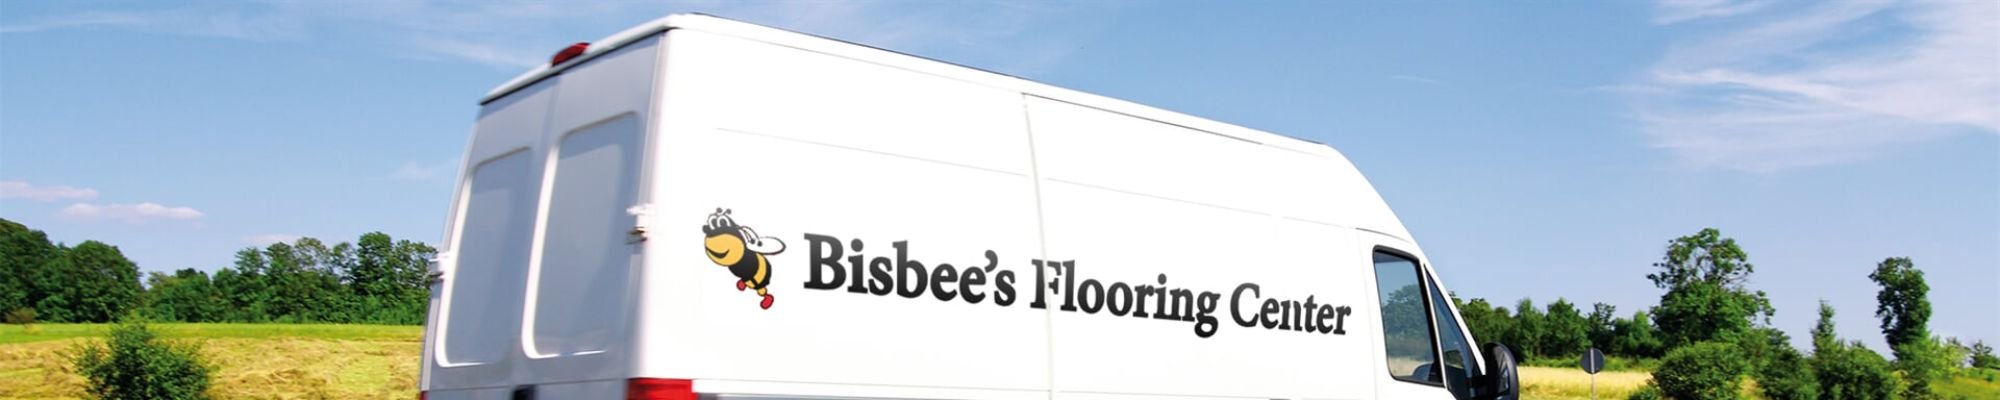 Bisbee's Flooring Center van